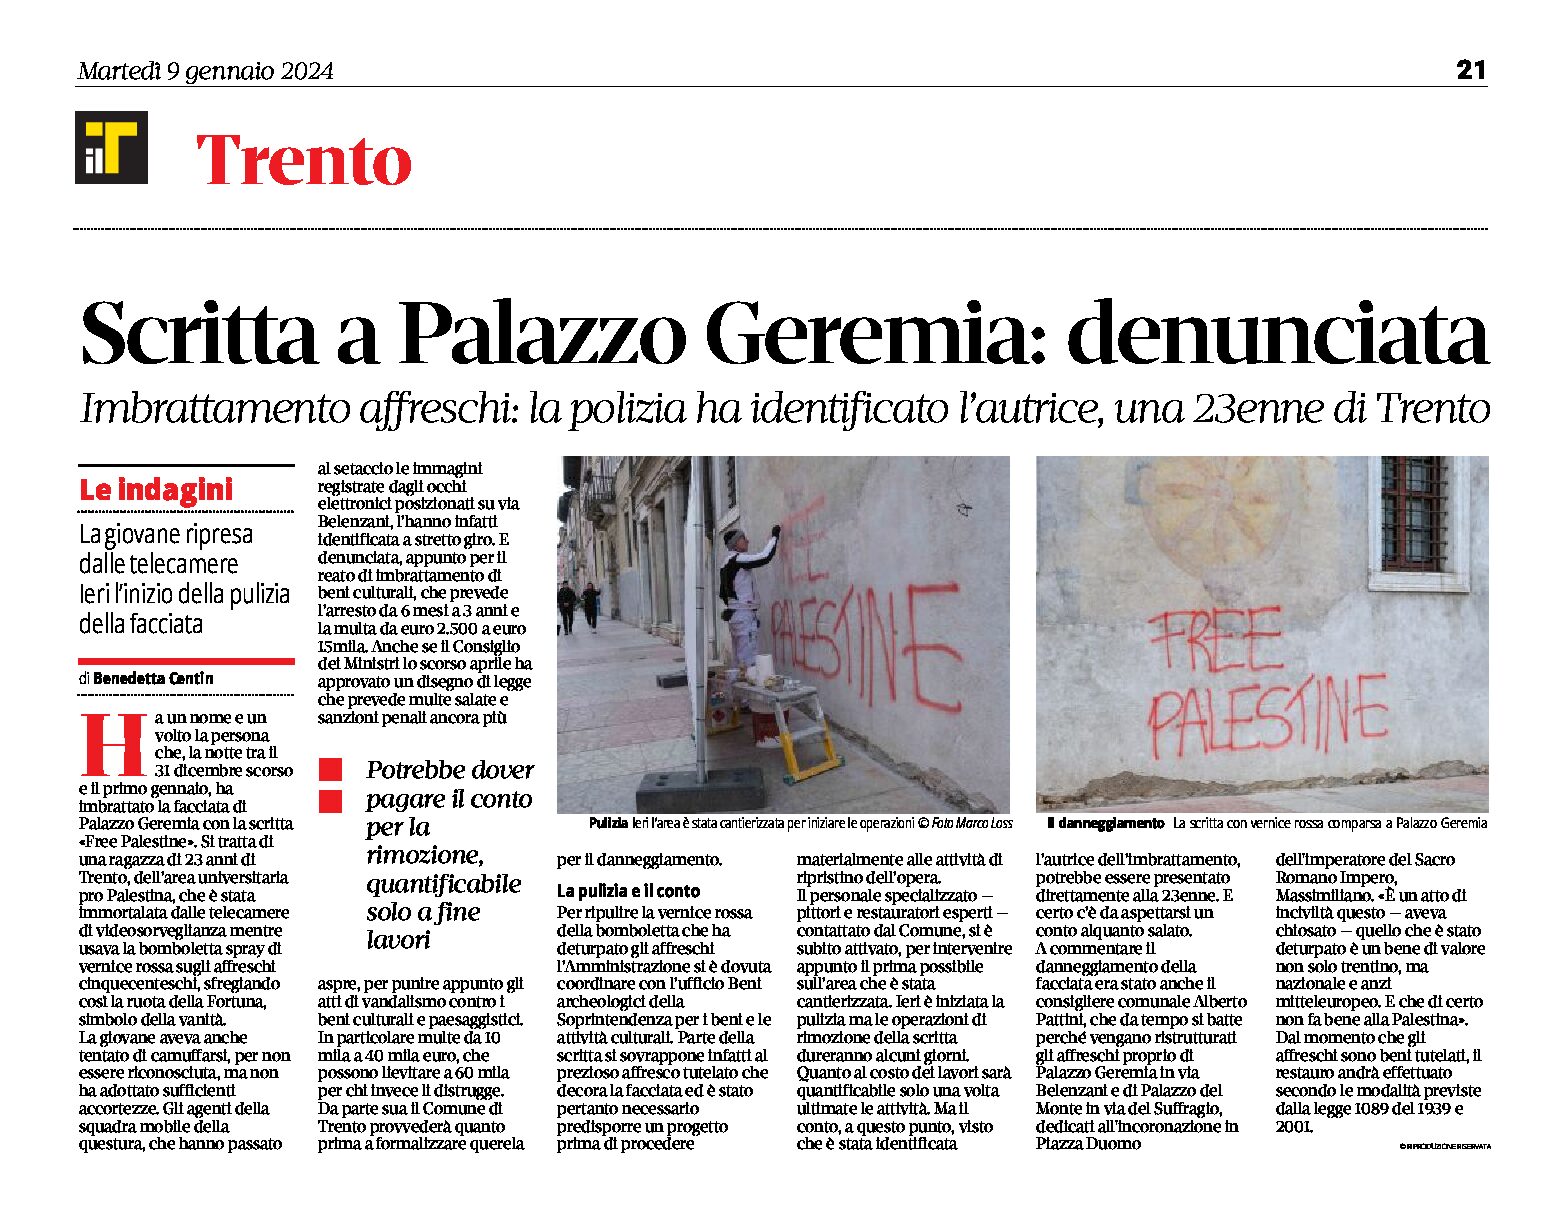 Trento, Palazzo Geremia: denunciata l’autrice della scritta sugli affreschi